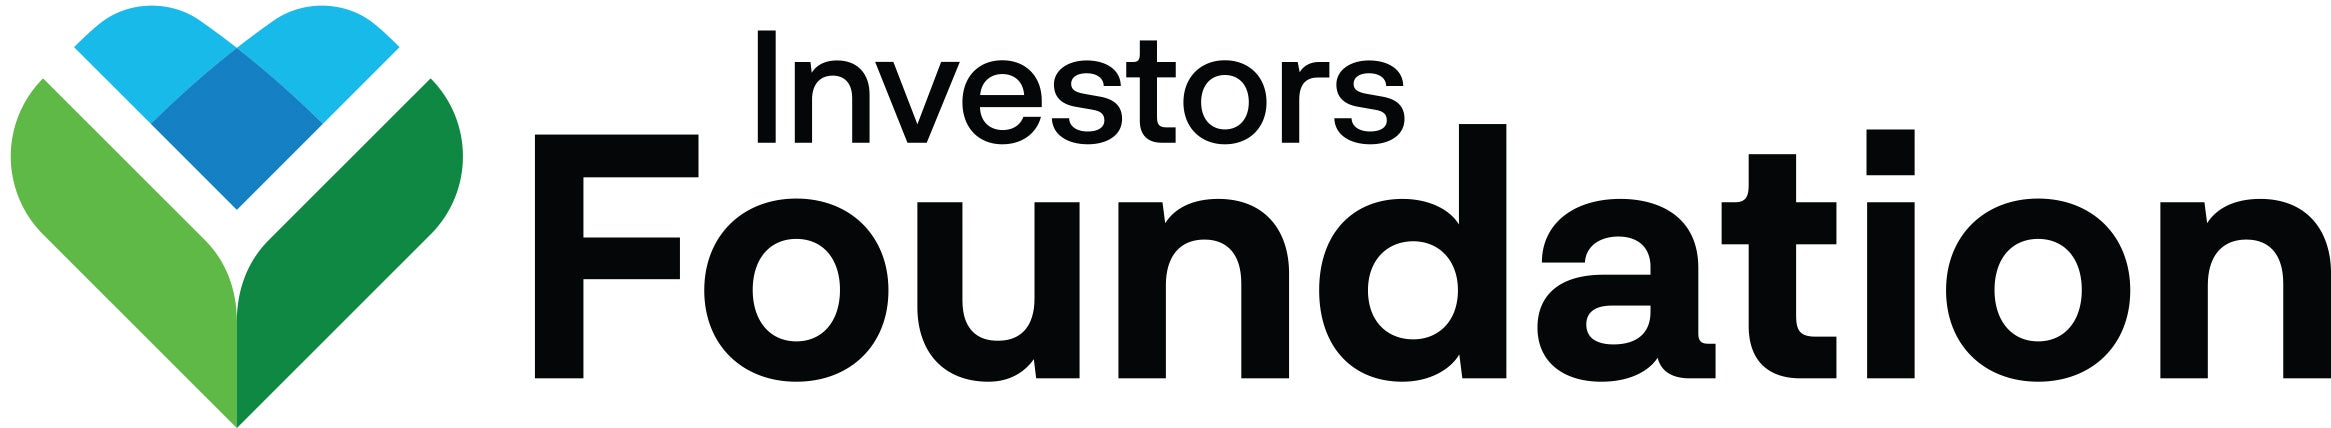 Investors_Foundation_Logo_Standard.jpg